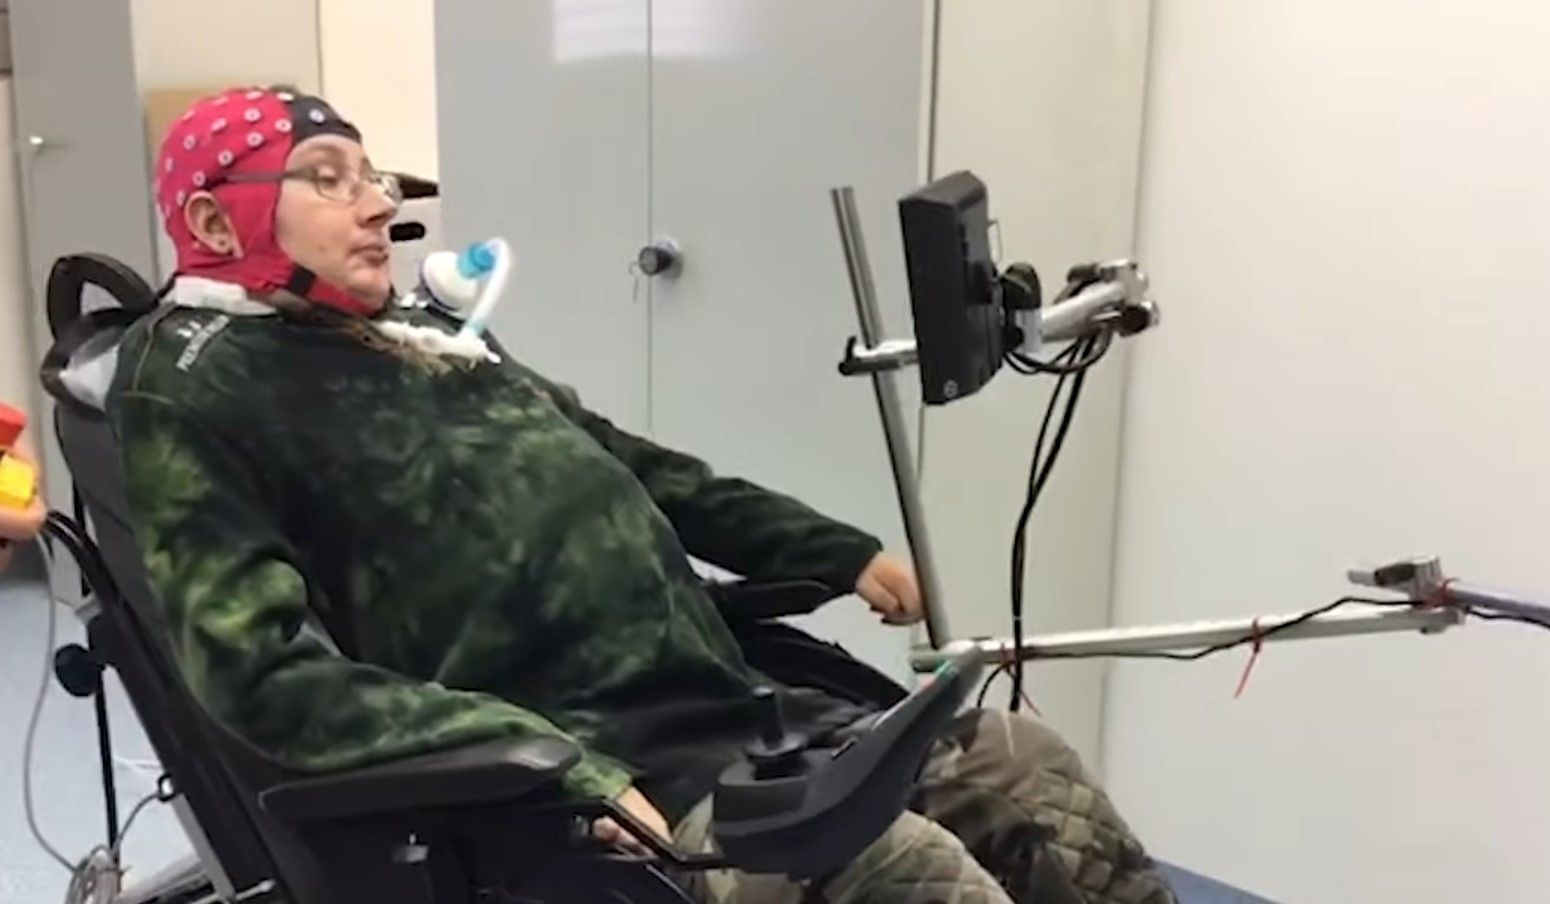 Паралізовані люди змогли керувати інвалідним візком силою думки - Здоровʼя 24